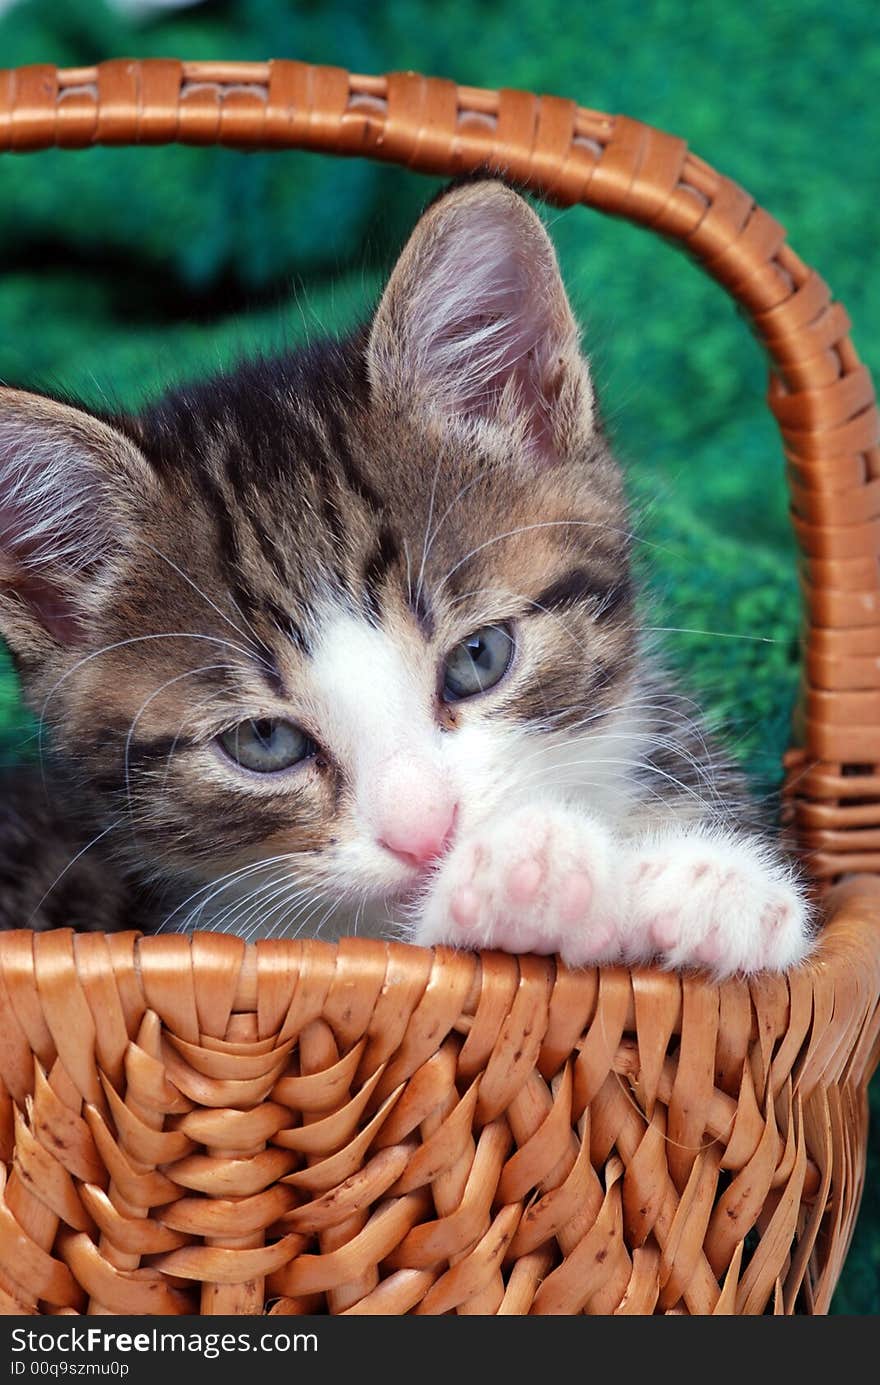 Kitten sitting in a small basket. Kitten sitting in a small basket